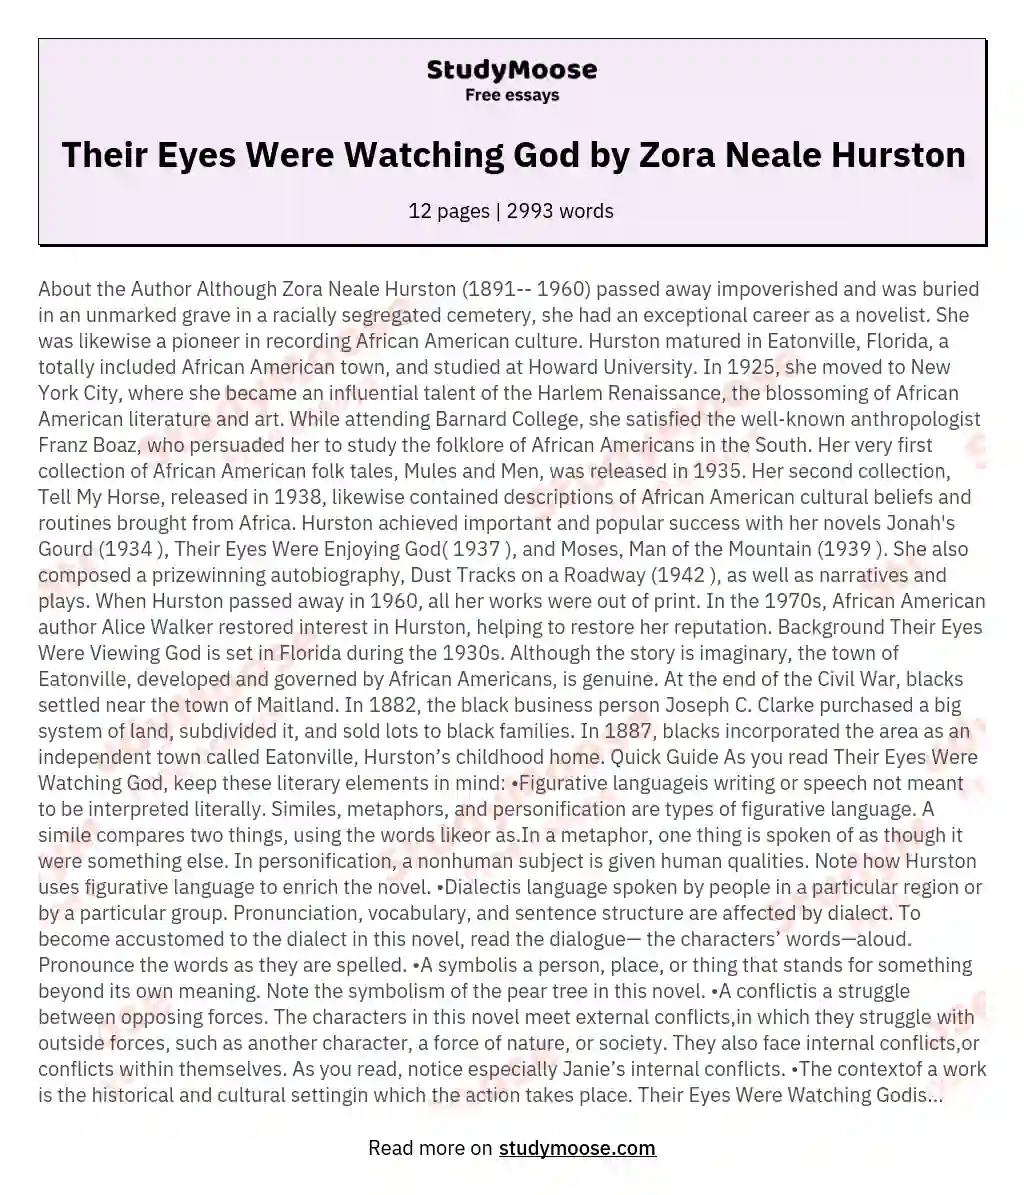 Their Eyes Were Watching God by Zora Neale Hurston essay